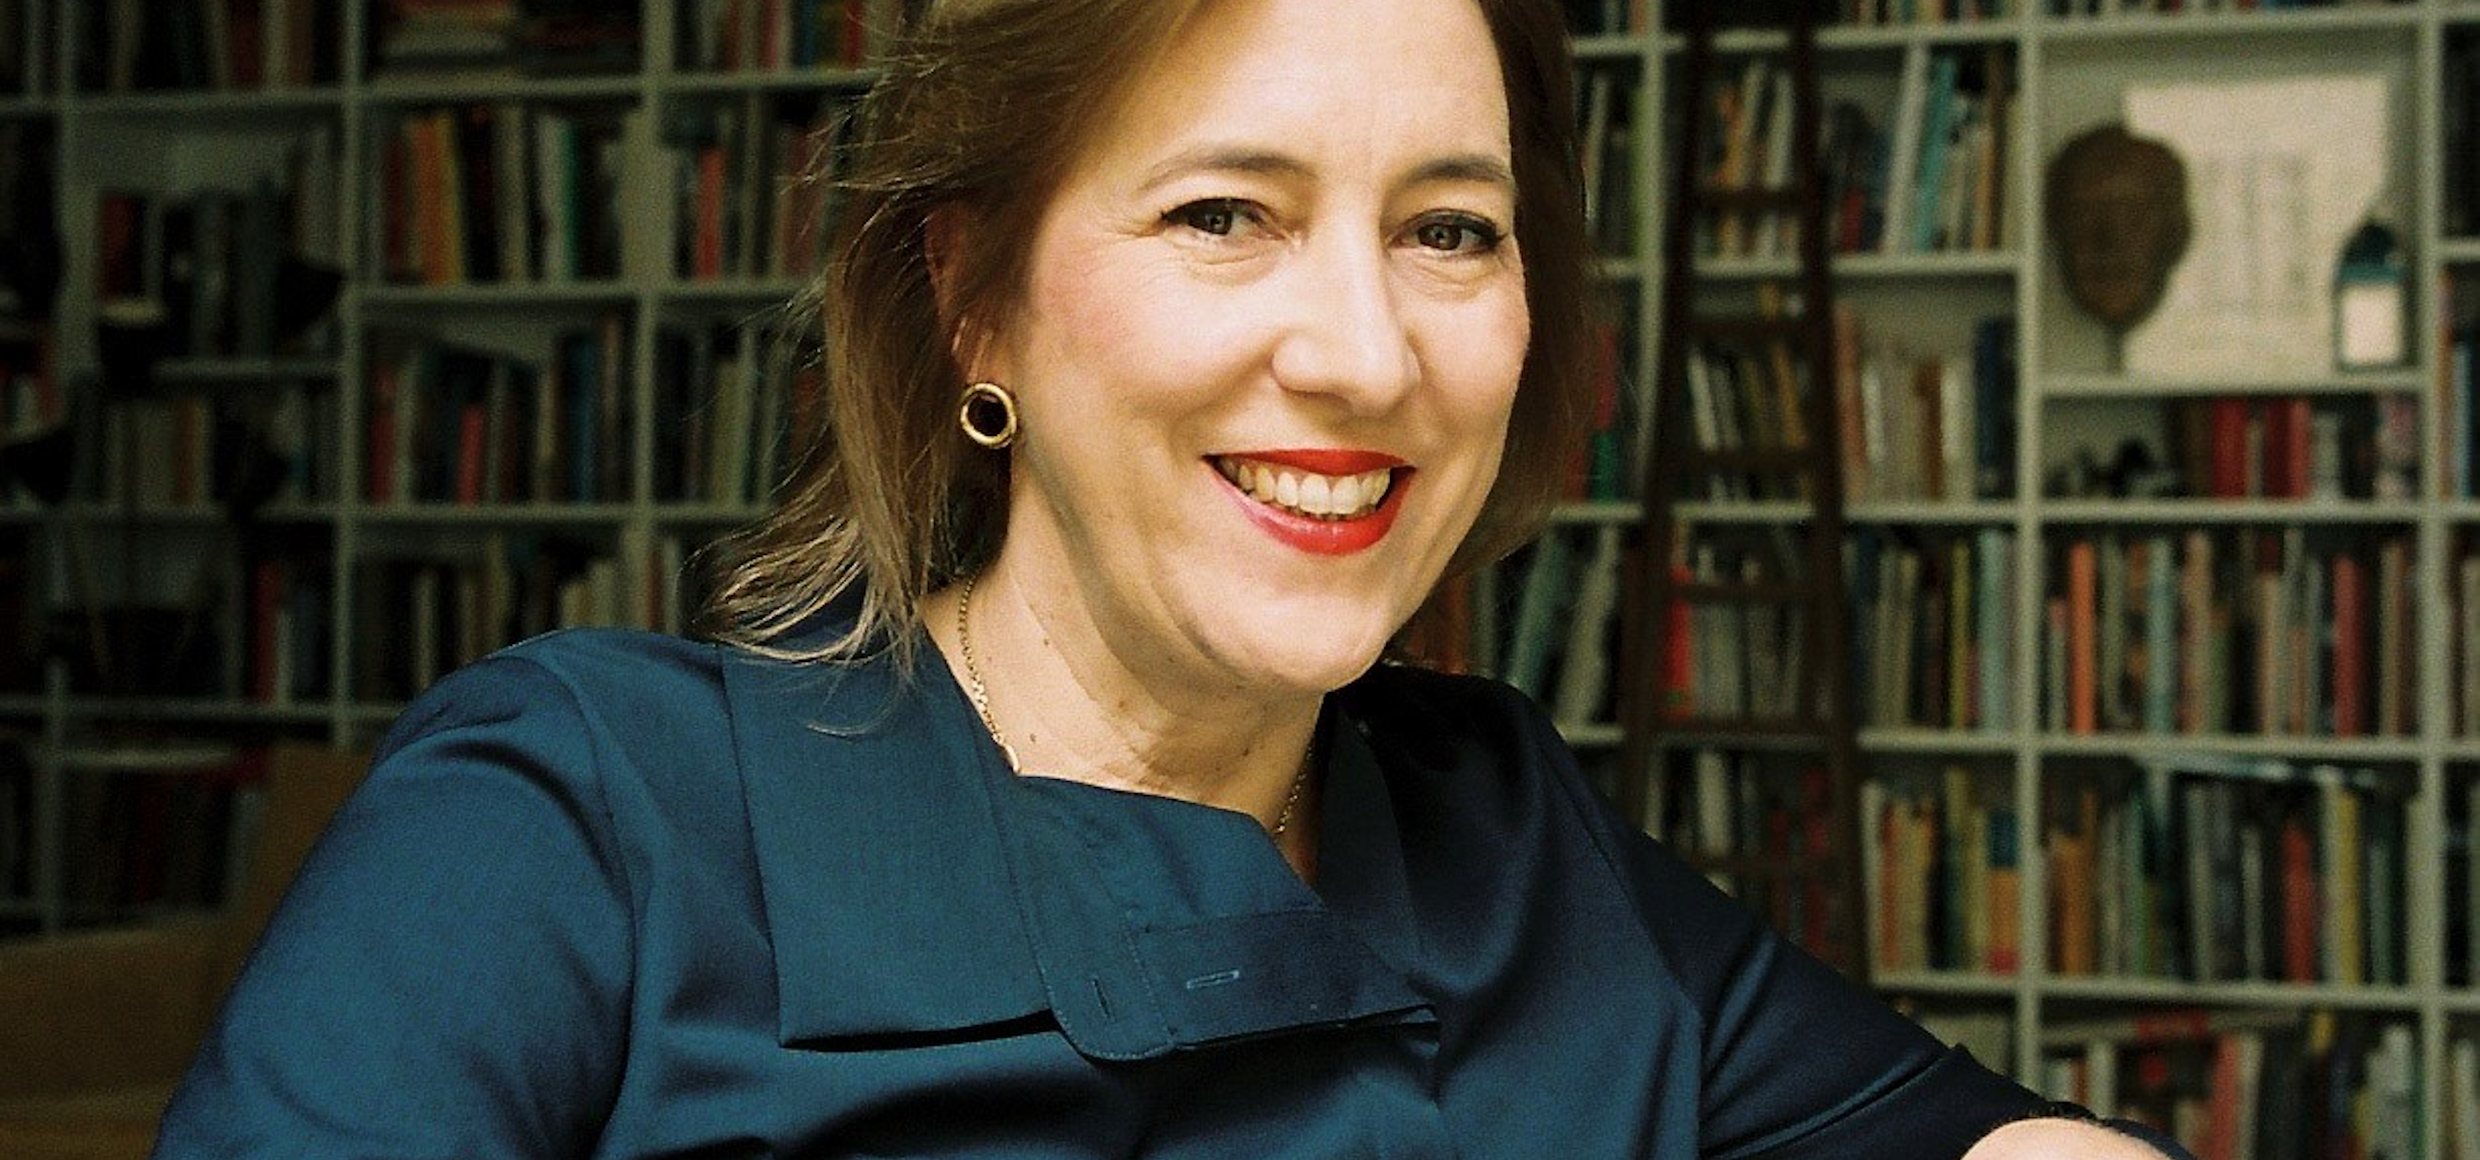 Dr. Lisa Zeitz